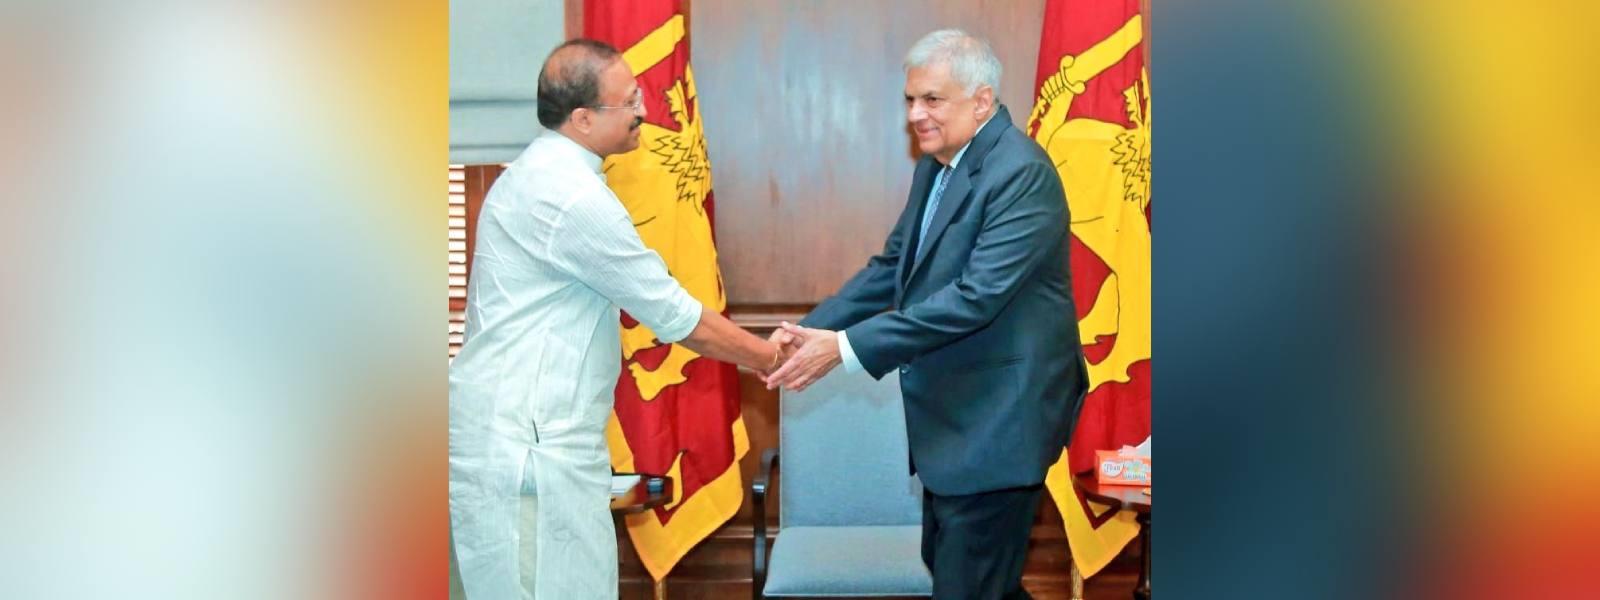 Minister of State for External Affairs Shri V. Muraleedharan called on H. E. Mr. Ranil Wickremesinghe, President of Sri Lanka in Colombo